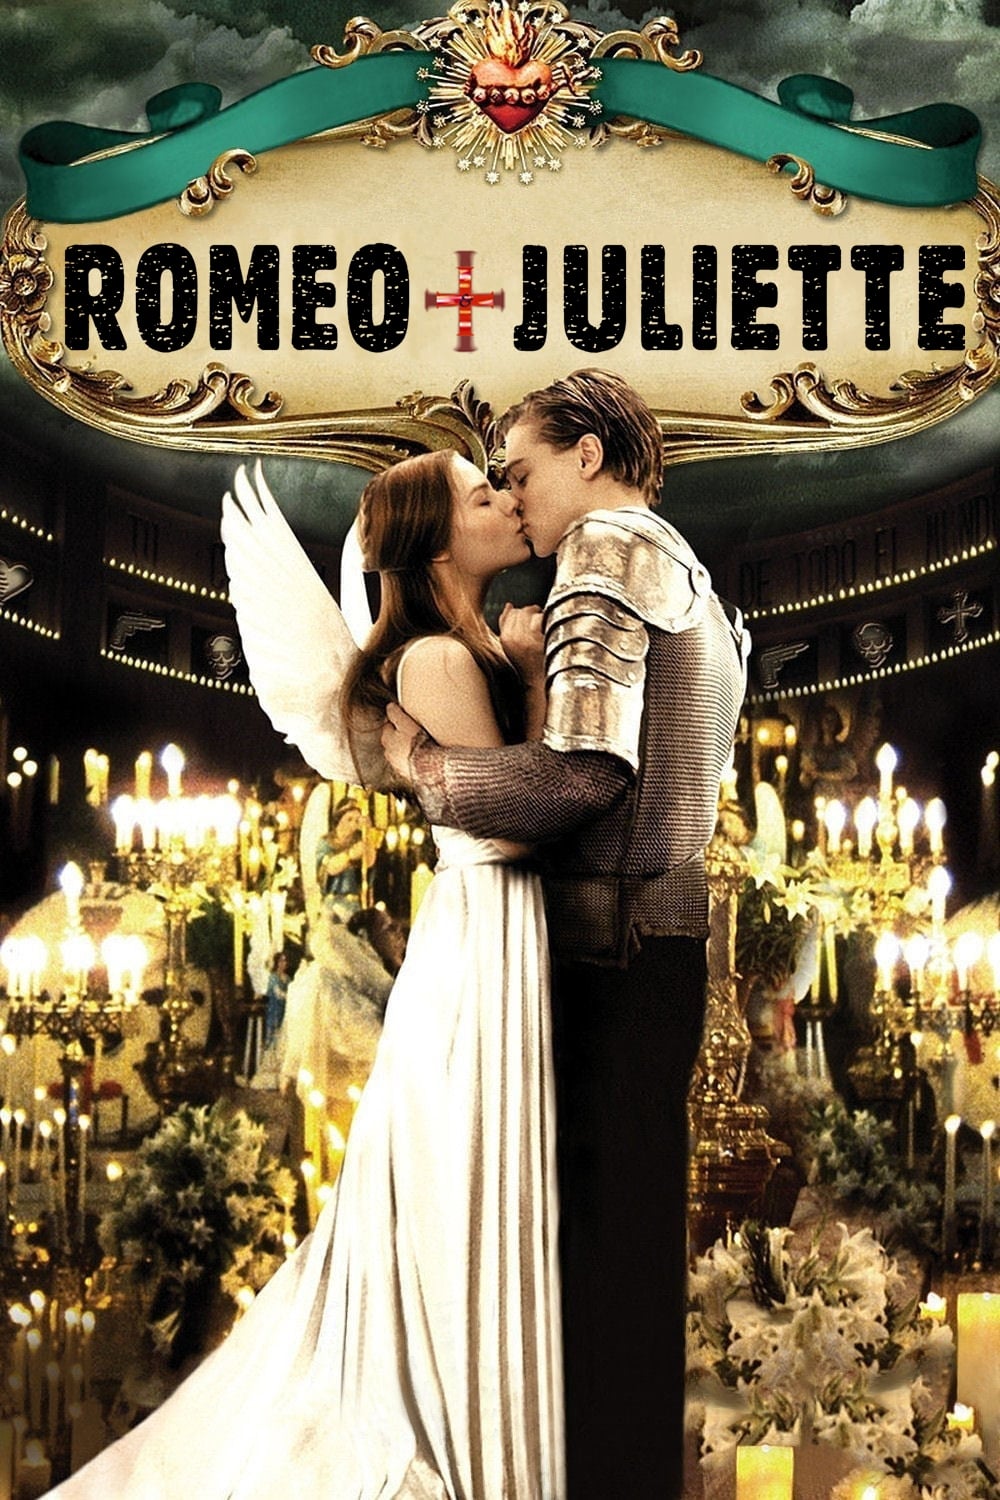 Affiche du film Roméo + Juliette